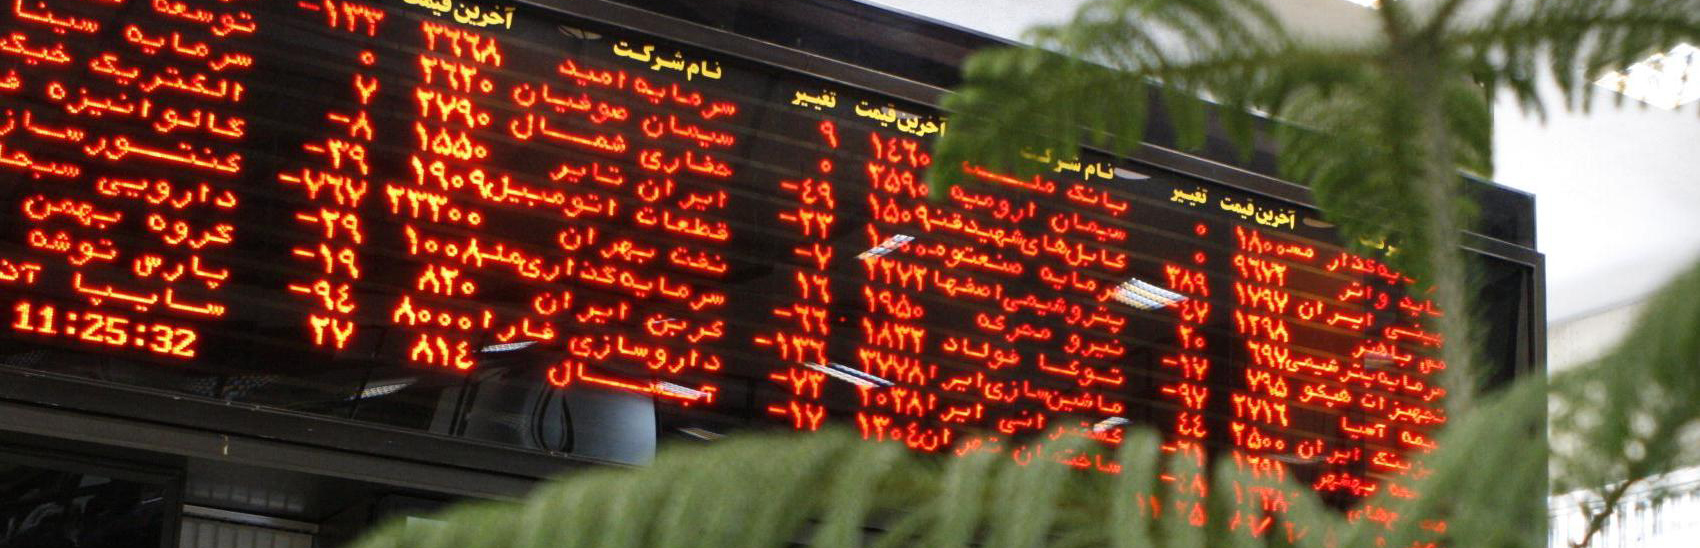 1.1 میلیارد برگه سهم در بورس تهران دادوستد شد